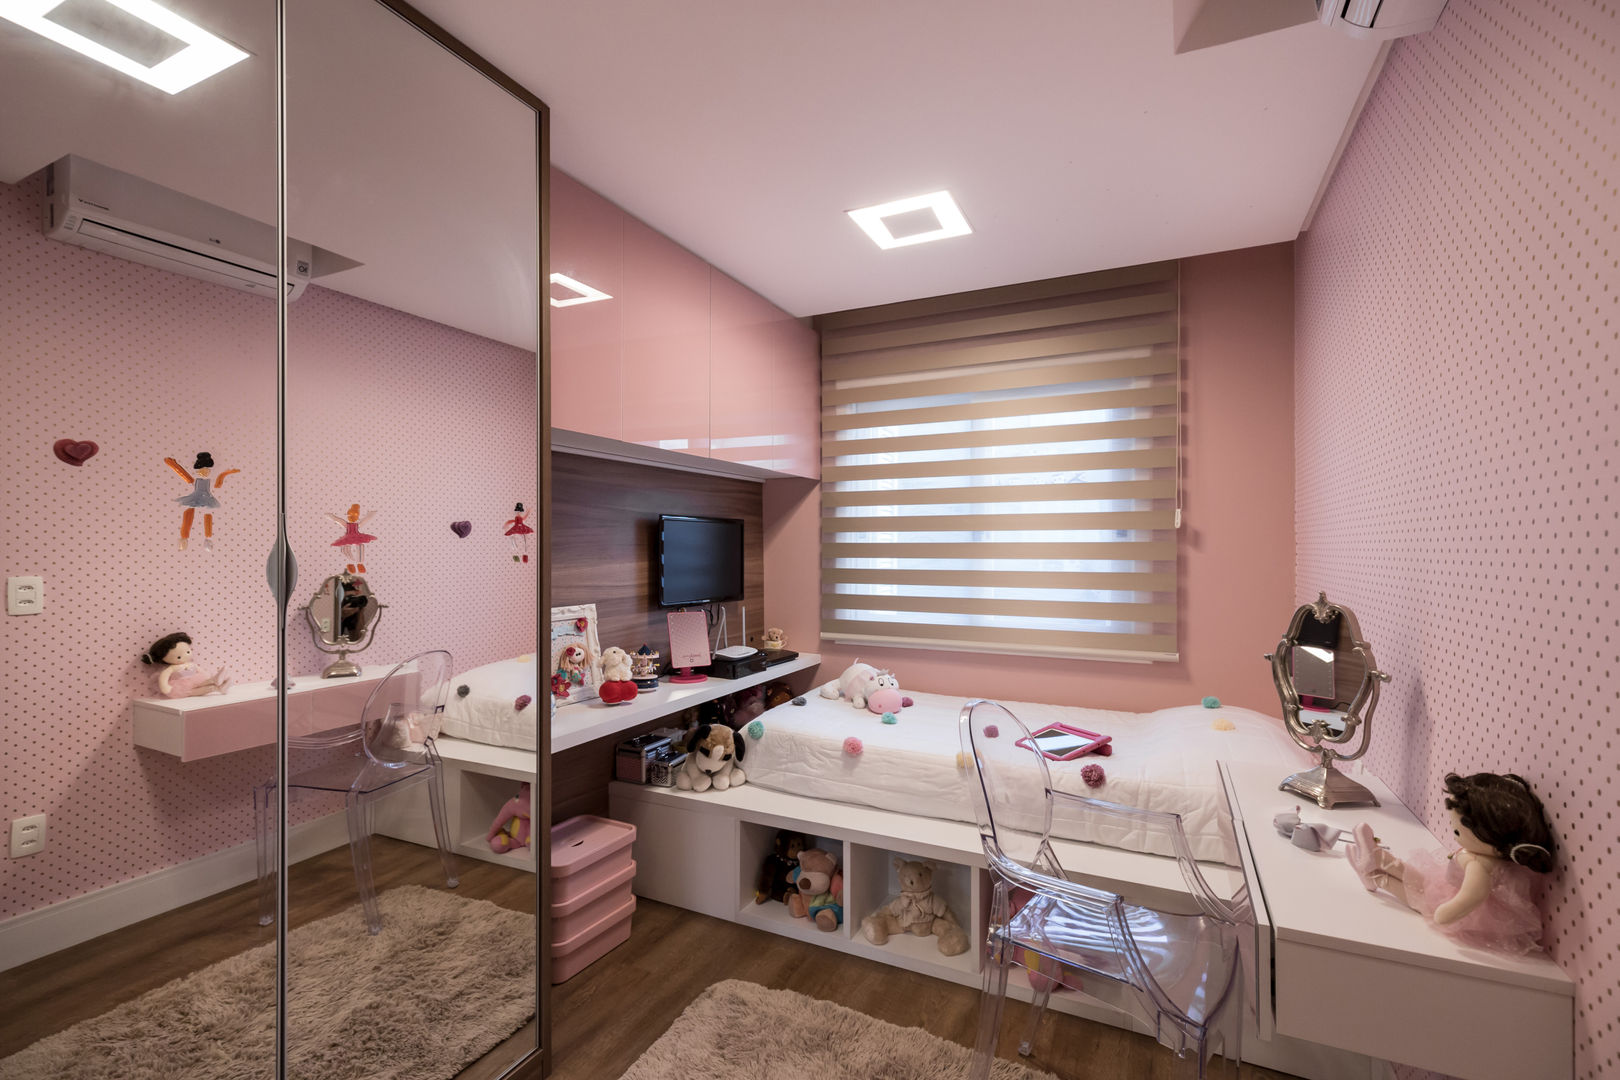 Casa Chácara das Pedras Bibiana Menegaz - Arquitetura de Atmosfera Quarto infantil moderno rosa, quarto de menina, quarto de princesa